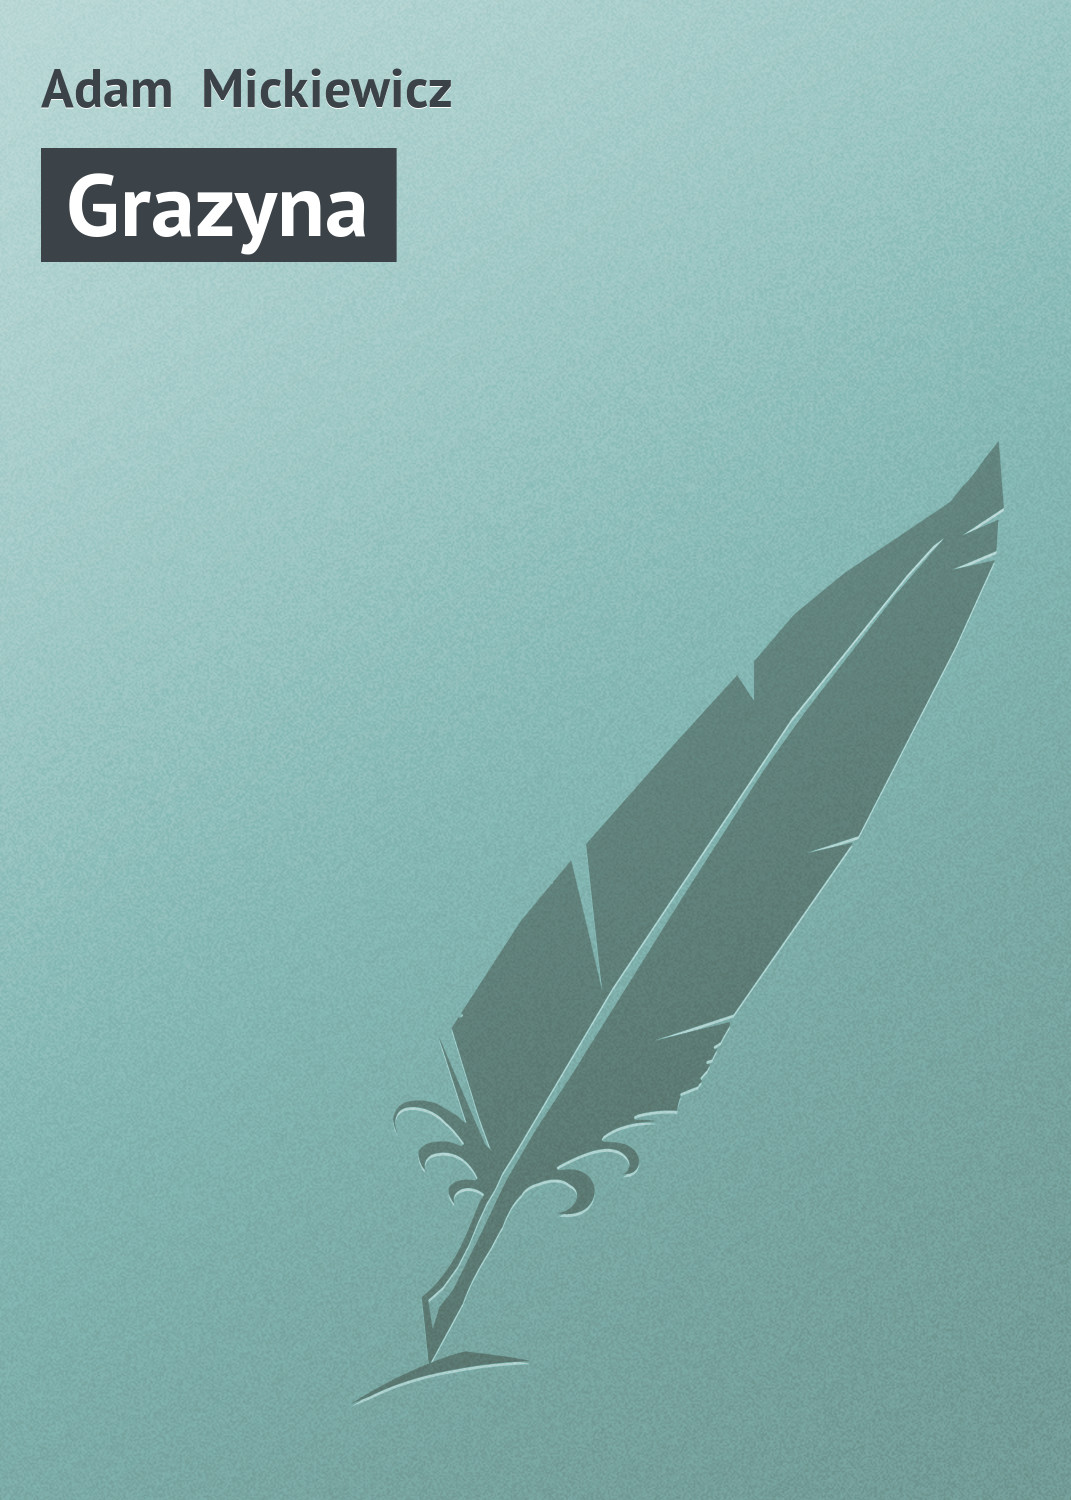 Книга Grazyna из серии , созданная Adam Mickiewicz, может относится к жанру Зарубежная старинная литература, Зарубежная классика. Стоимость электронной книги Grazyna с идентификатором 21105294 составляет 5.99 руб.